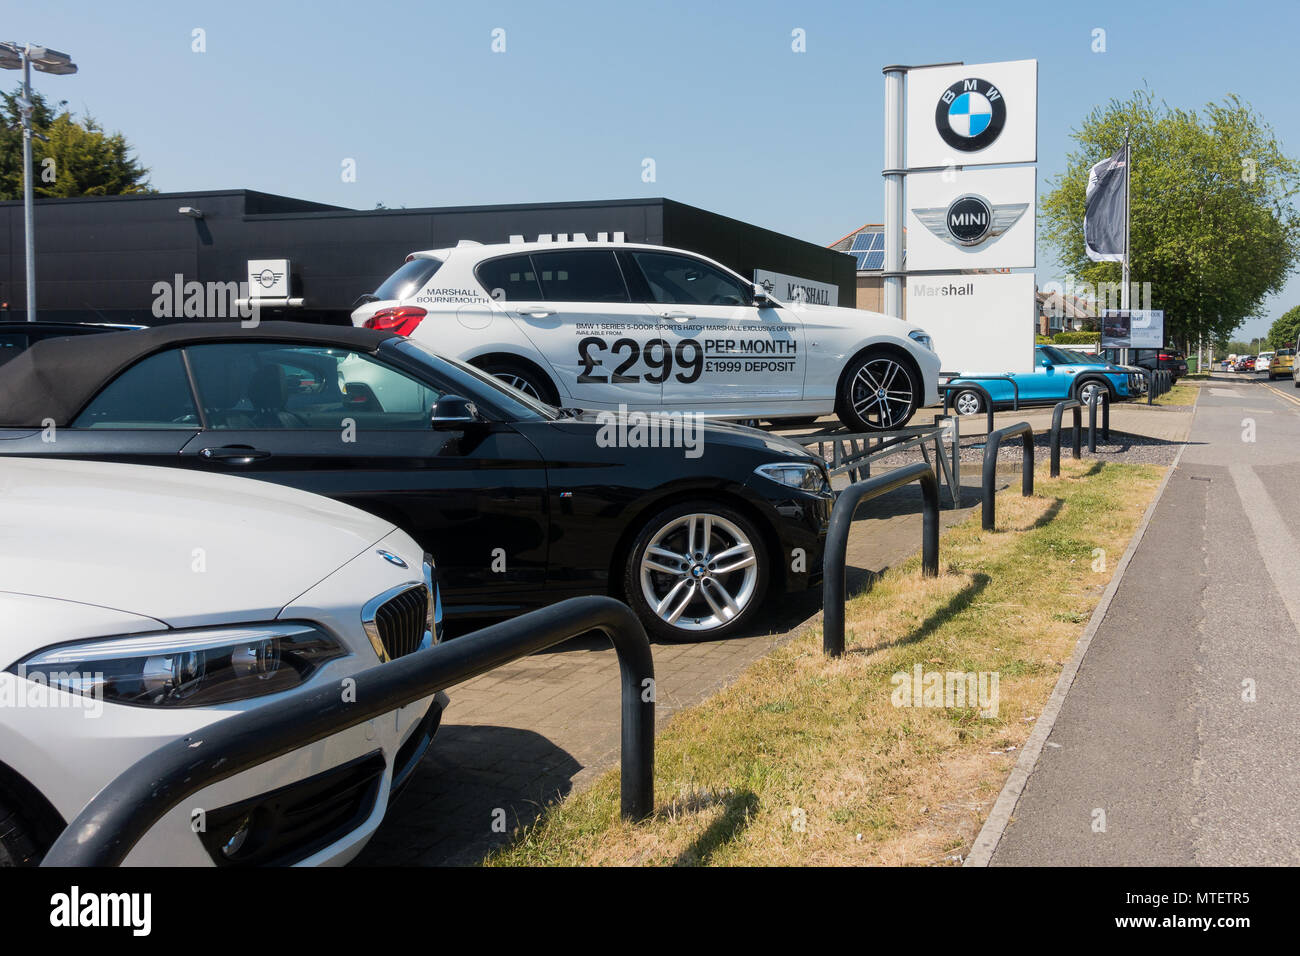 BMW - E30 M Power  Plaques vintage en métal à accrocher au mur